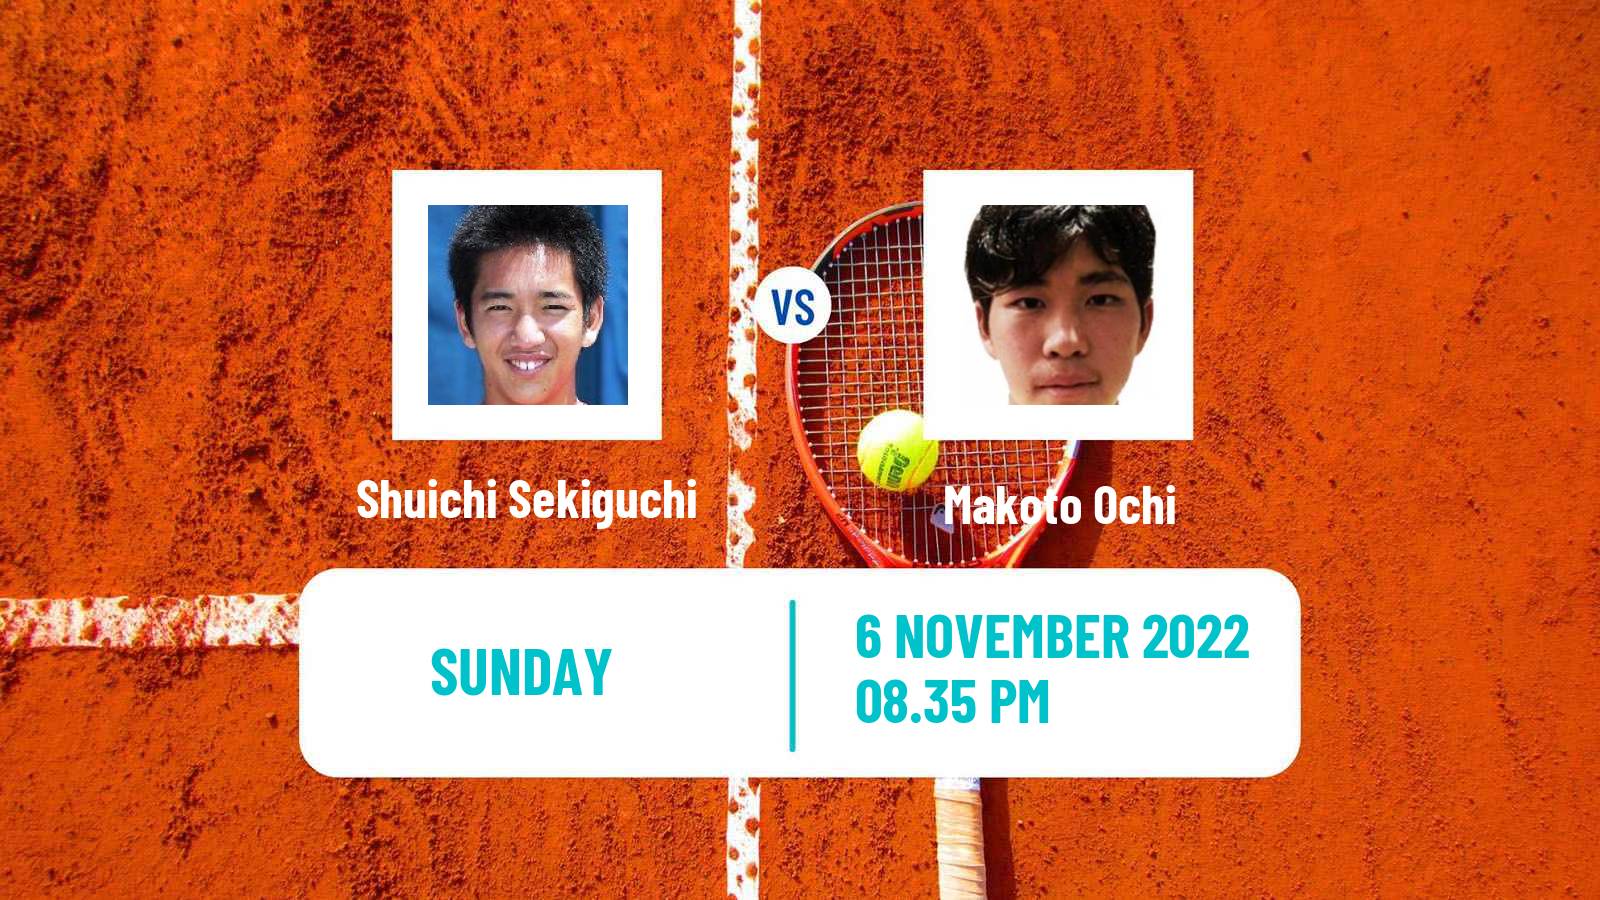 Tennis ATP Challenger Shuichi Sekiguchi - Makoto Ochi